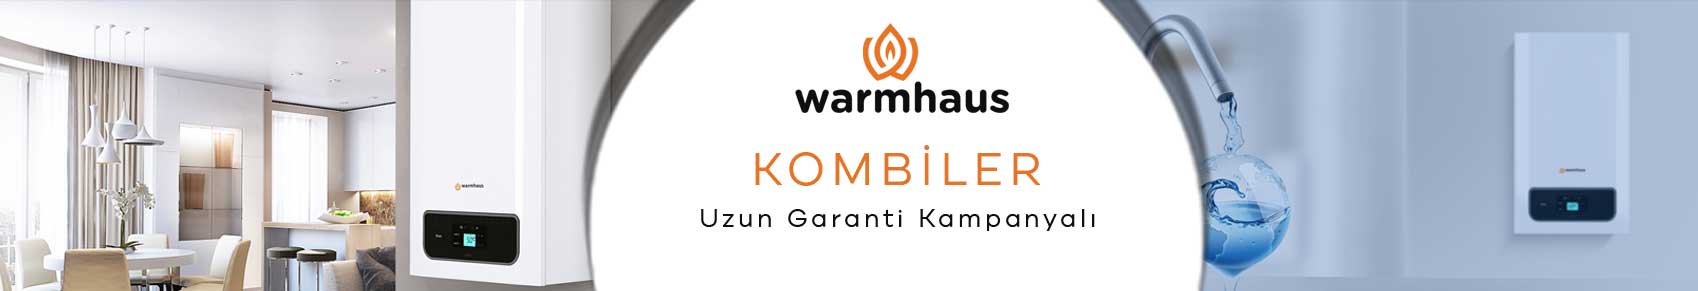 Yoğuşmalı Kombi Warmhaus 252